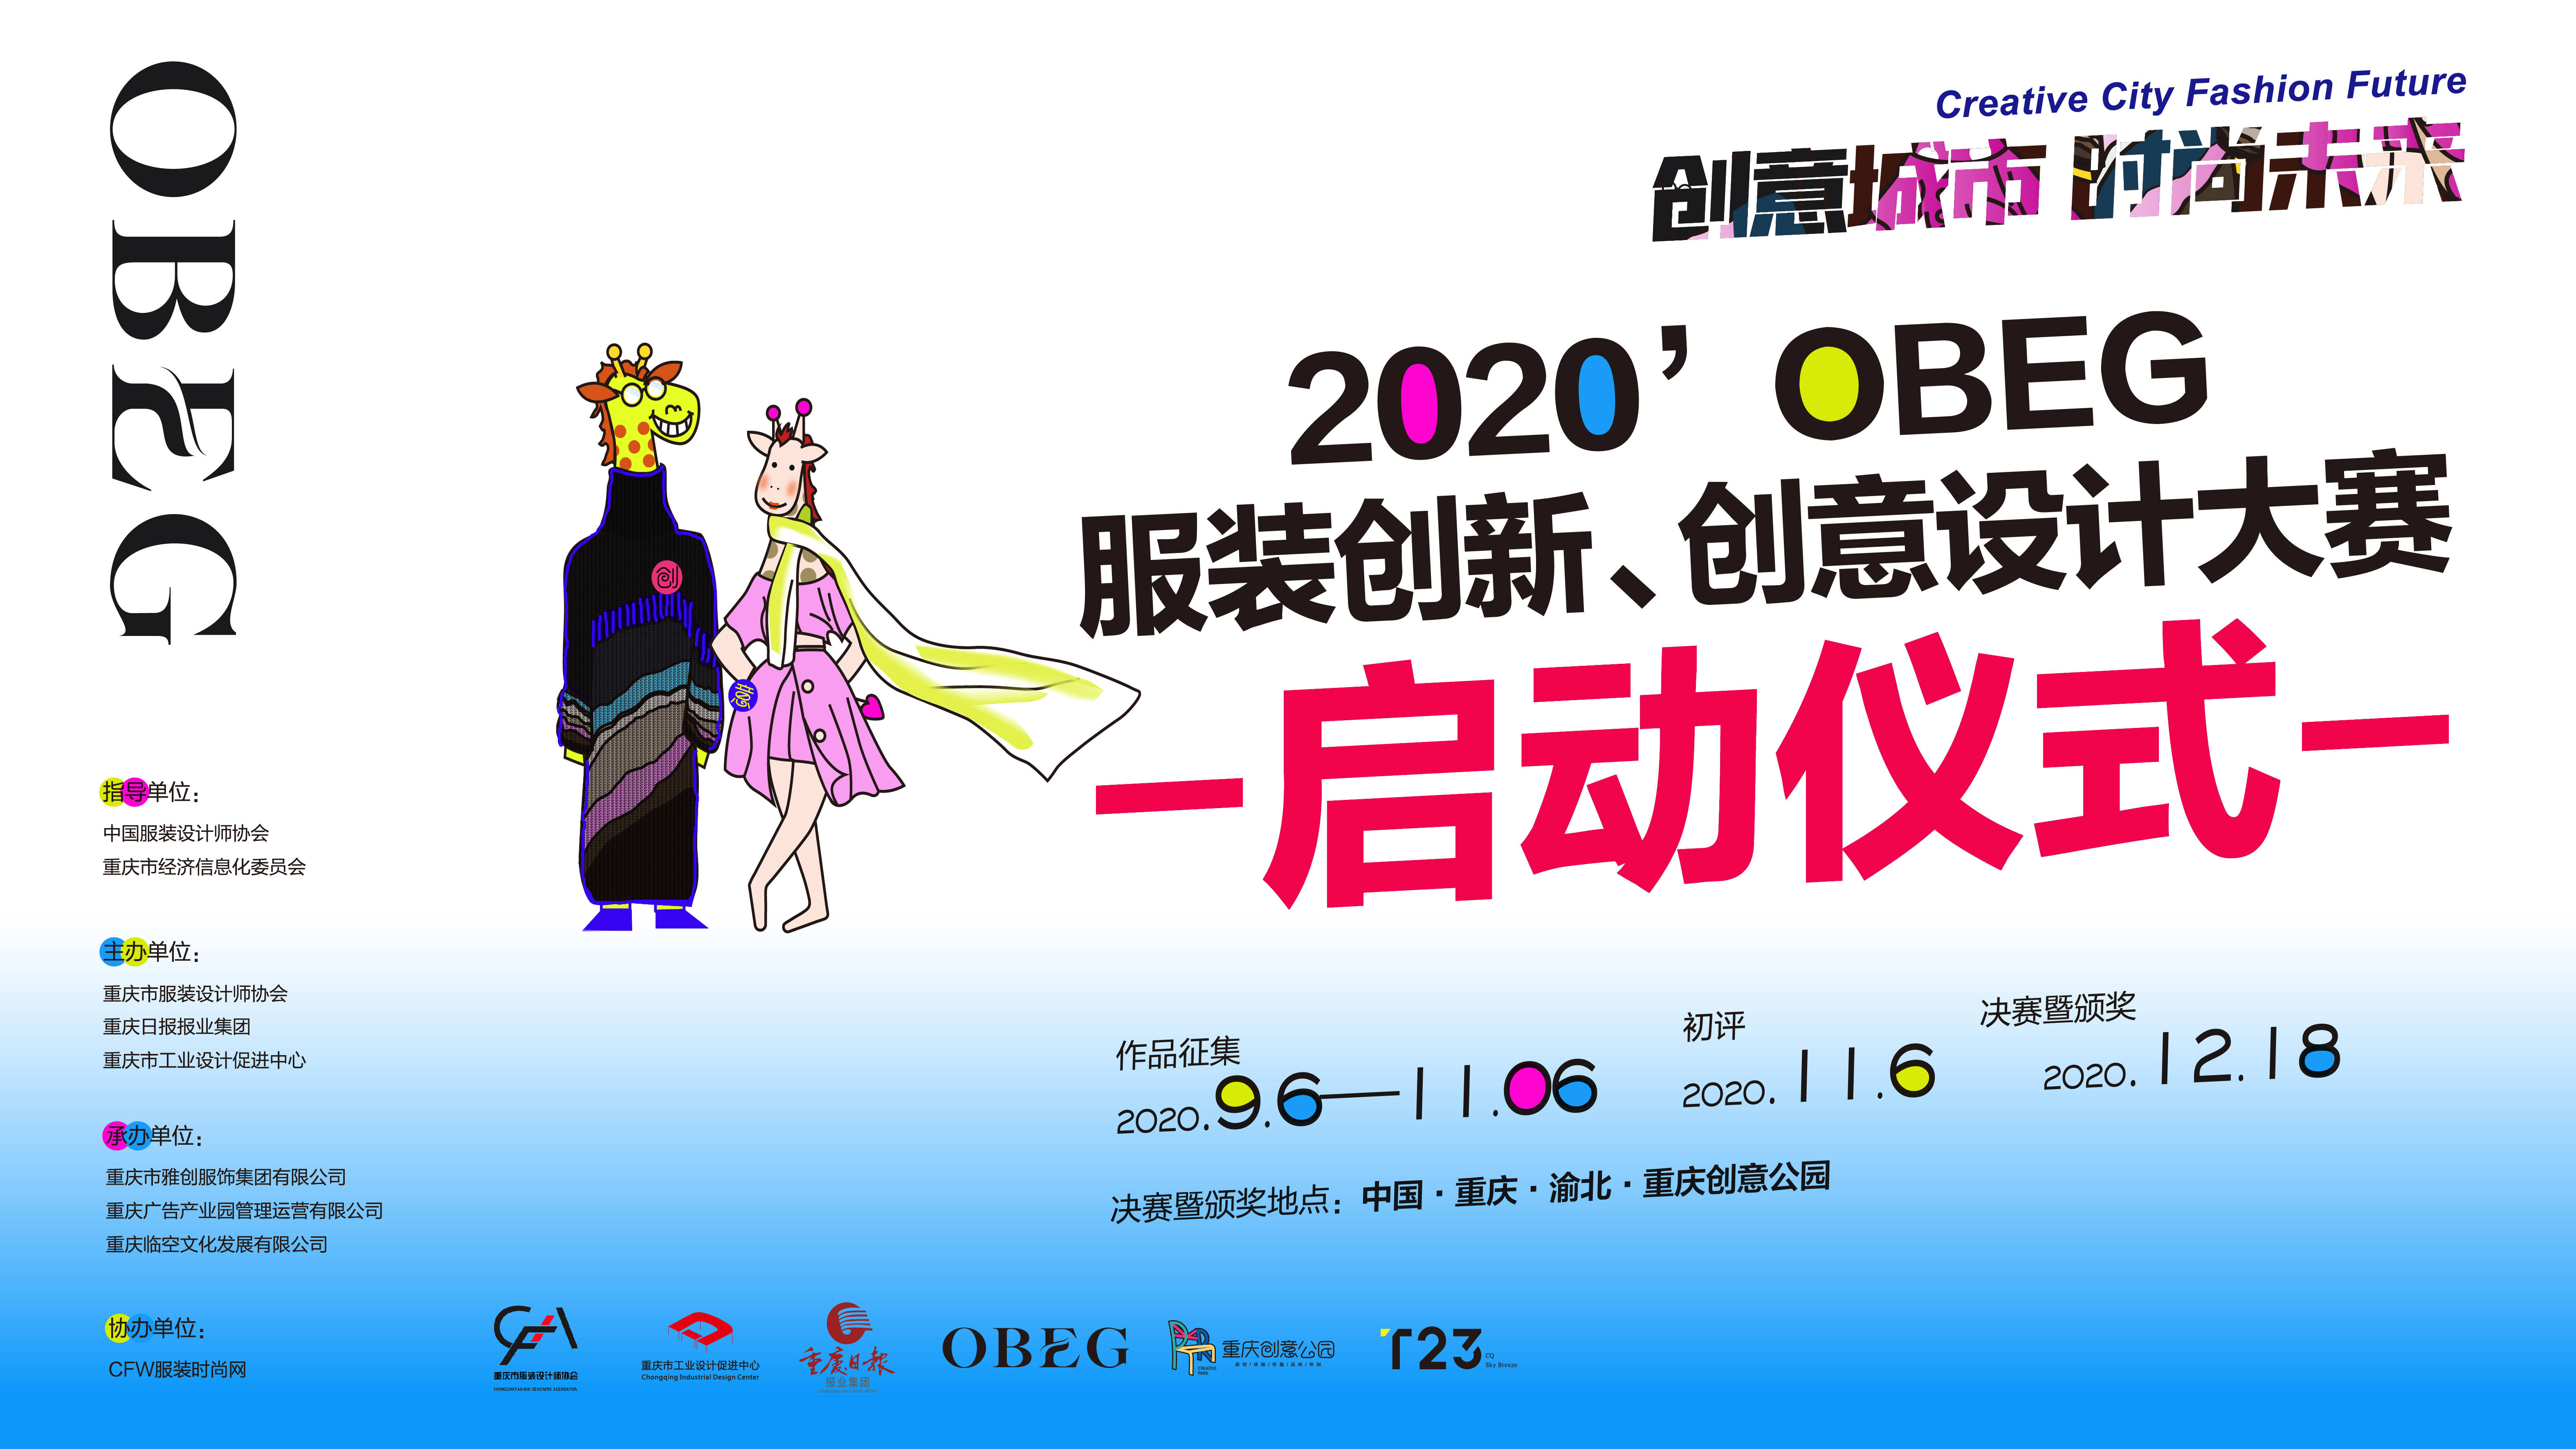 创意城市！2020 OBEG服装创新创意设计大赛盛大启动